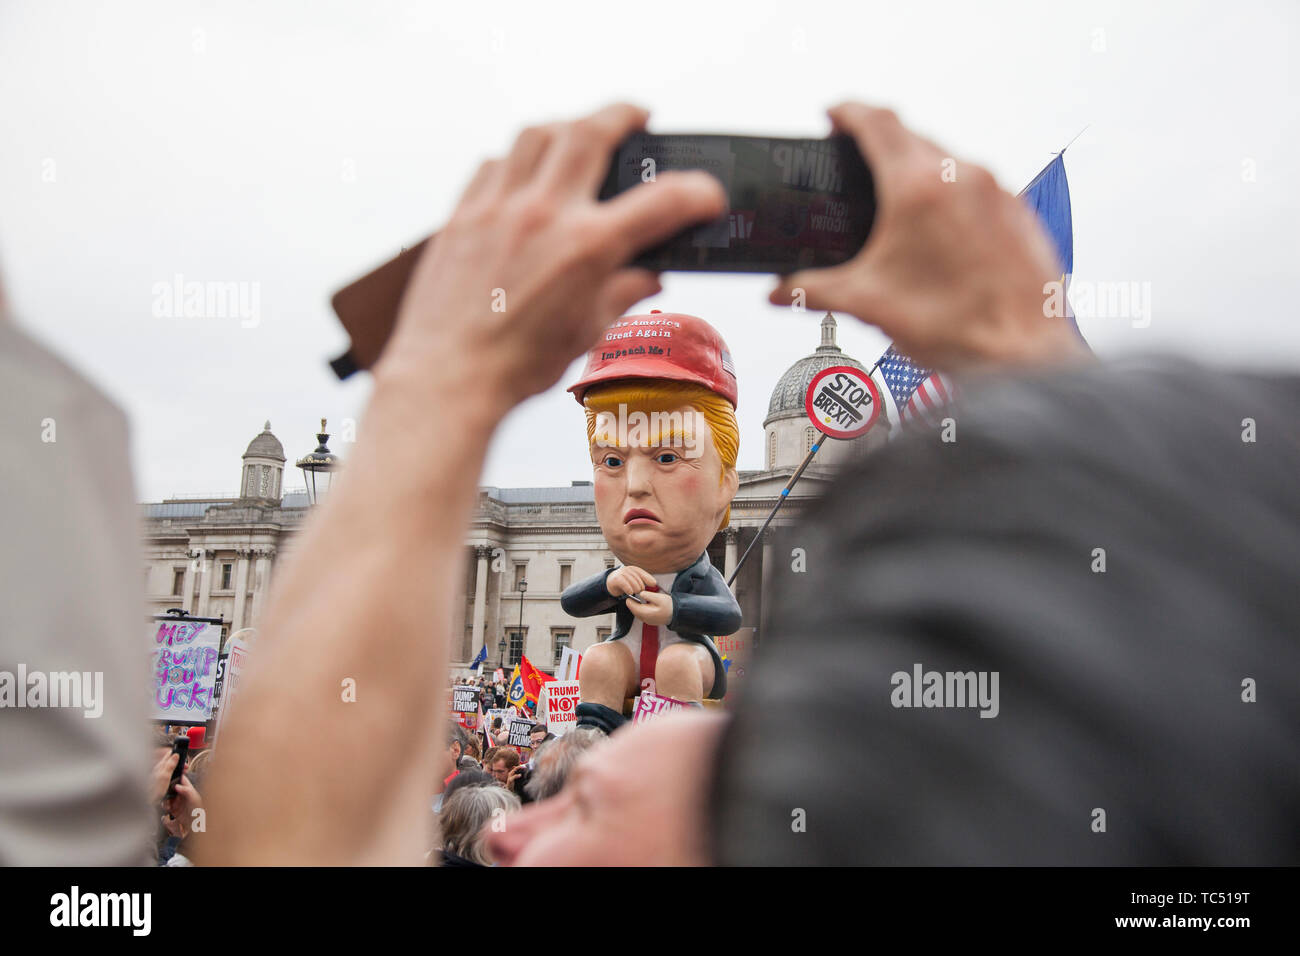 Londres, Reino Unido - 4 junio, 2019: una sátira política escultura de Donald Trump hecha en un anti Trump de marzo en Londres Foto de stock